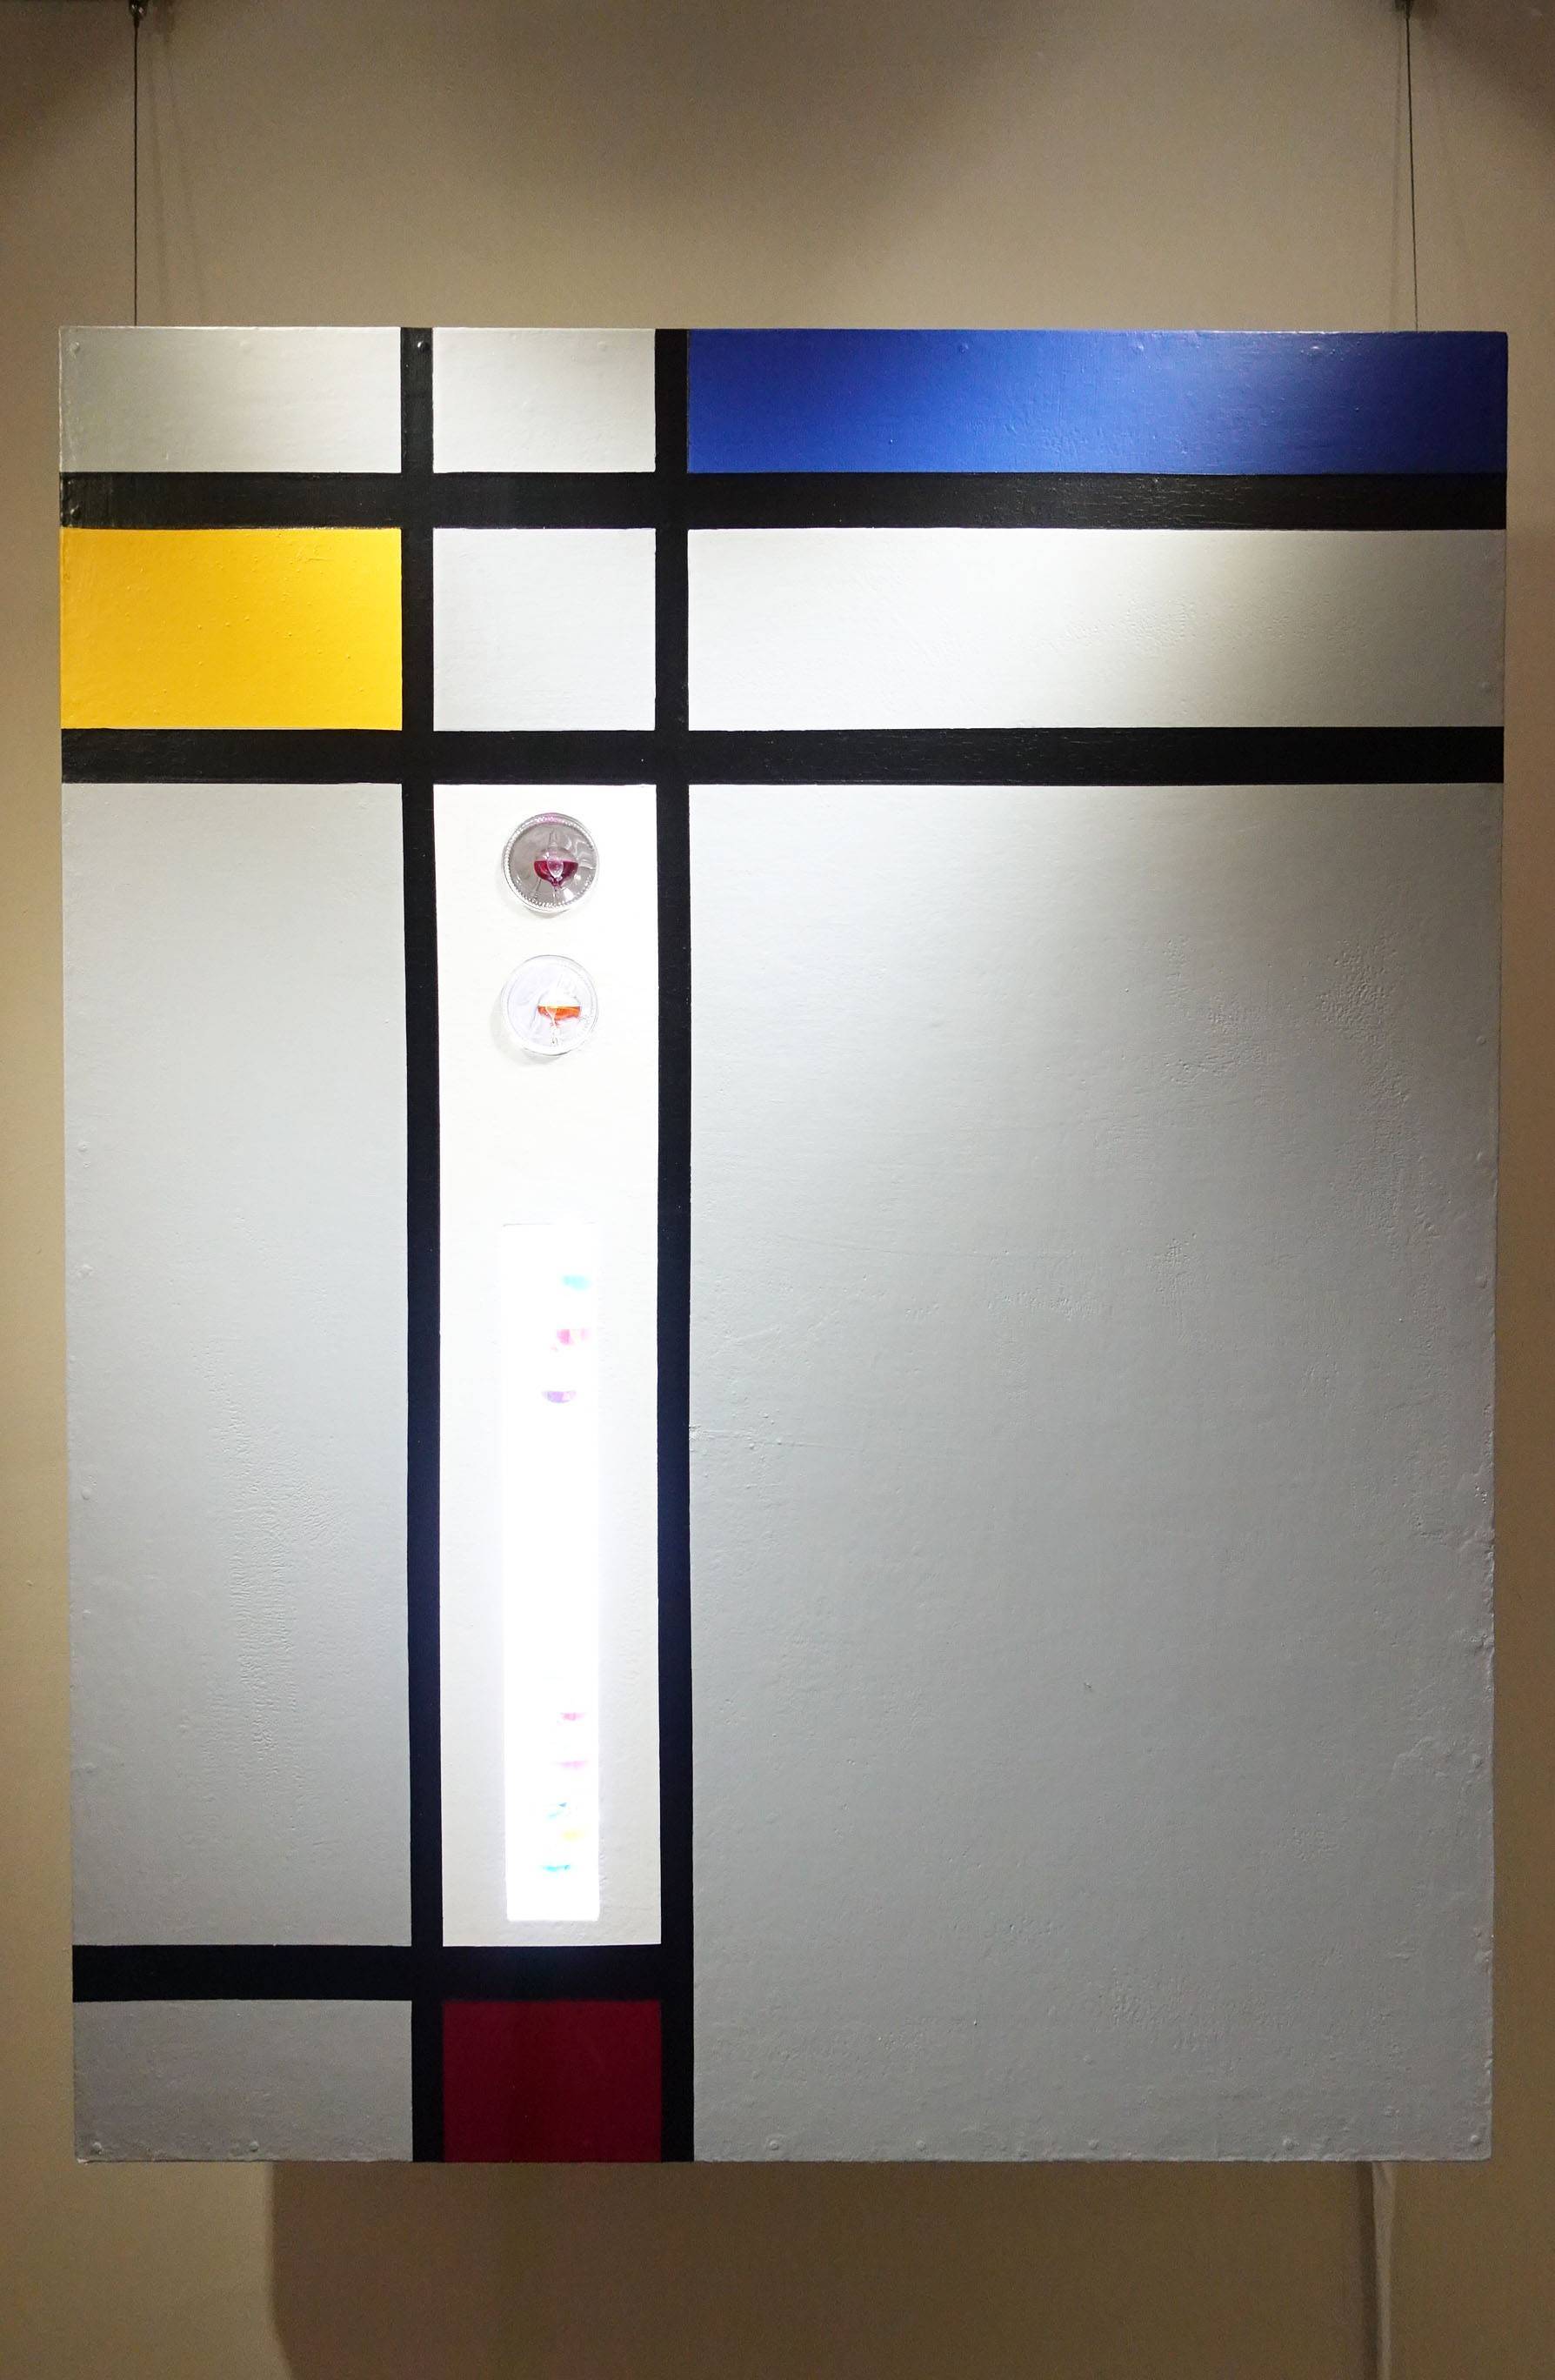 張建雄，《像蒙德里安致敬》，116 x 91 cm，複合媒材，2019。